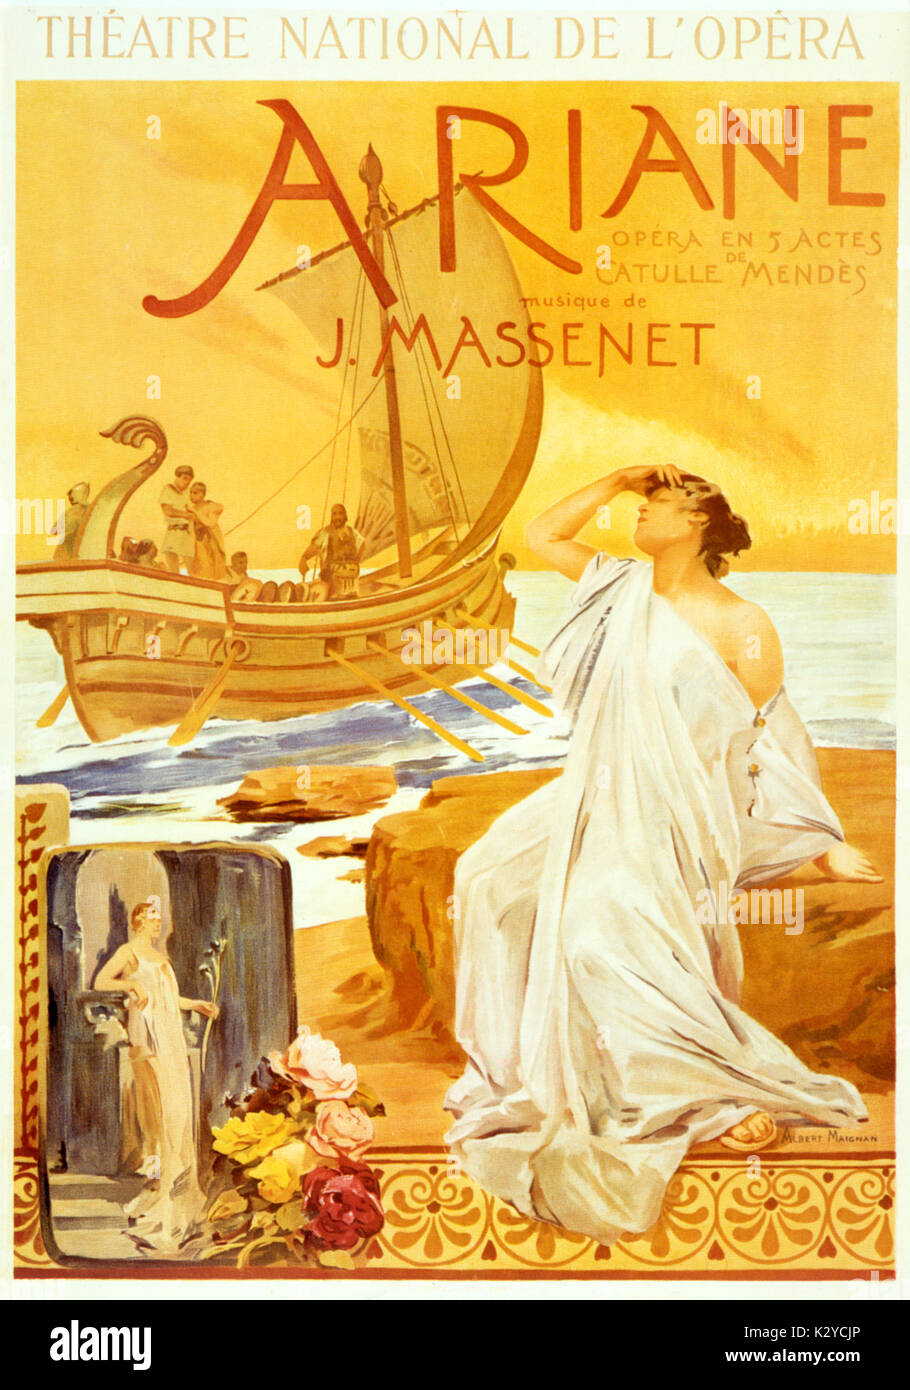 Jules Massenet - ARIANE Poster pour la performance au Théâtre National de l'Opéra (1906), par Albert Maignan (1845-1908). Compositeur français (1842-1912). Banque D'Images